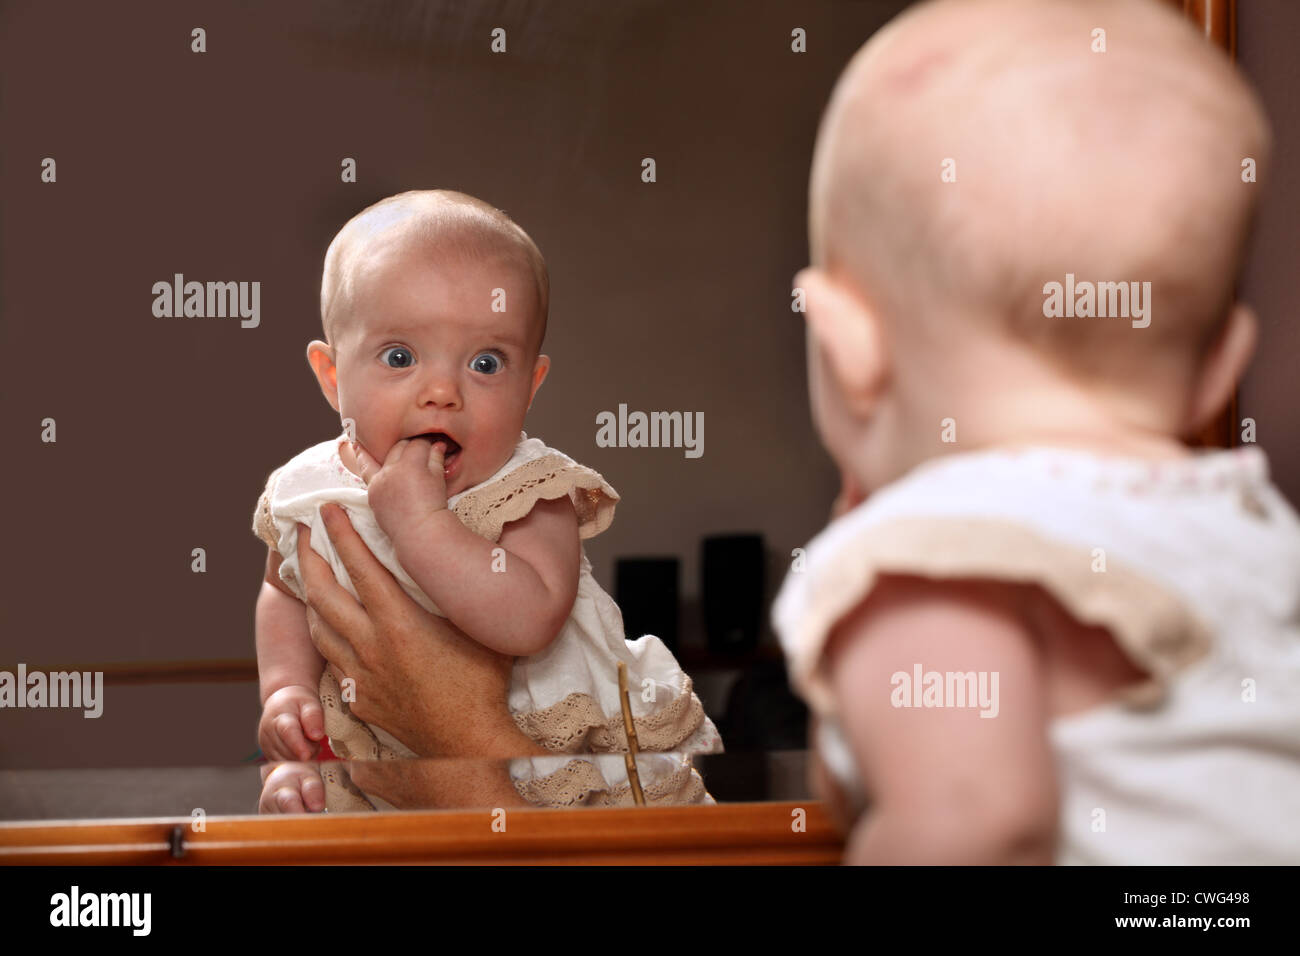 Un bambino di 6 mesi ragazza sorride come essa riconosce se stessa in uno specchio mentre è trattenuto da una mano mans Foto Stock